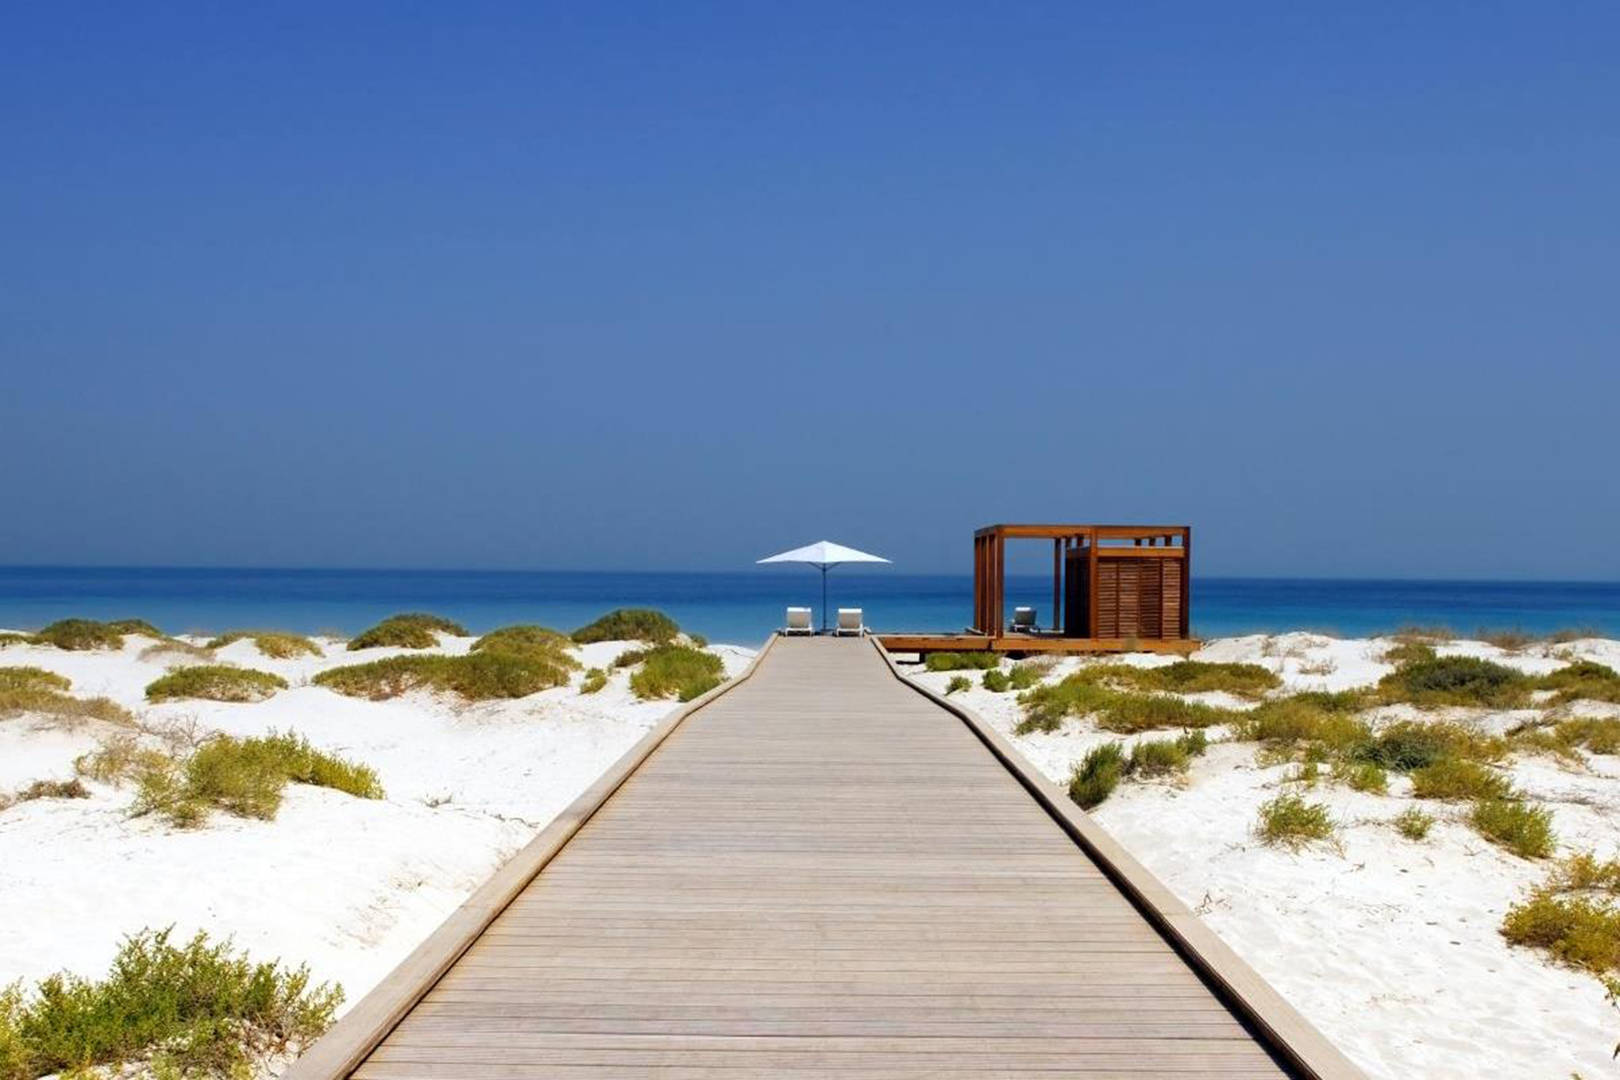 Rejuvenate at the Sunny Saadiyat Public Beach - Abu Dhabi Blog